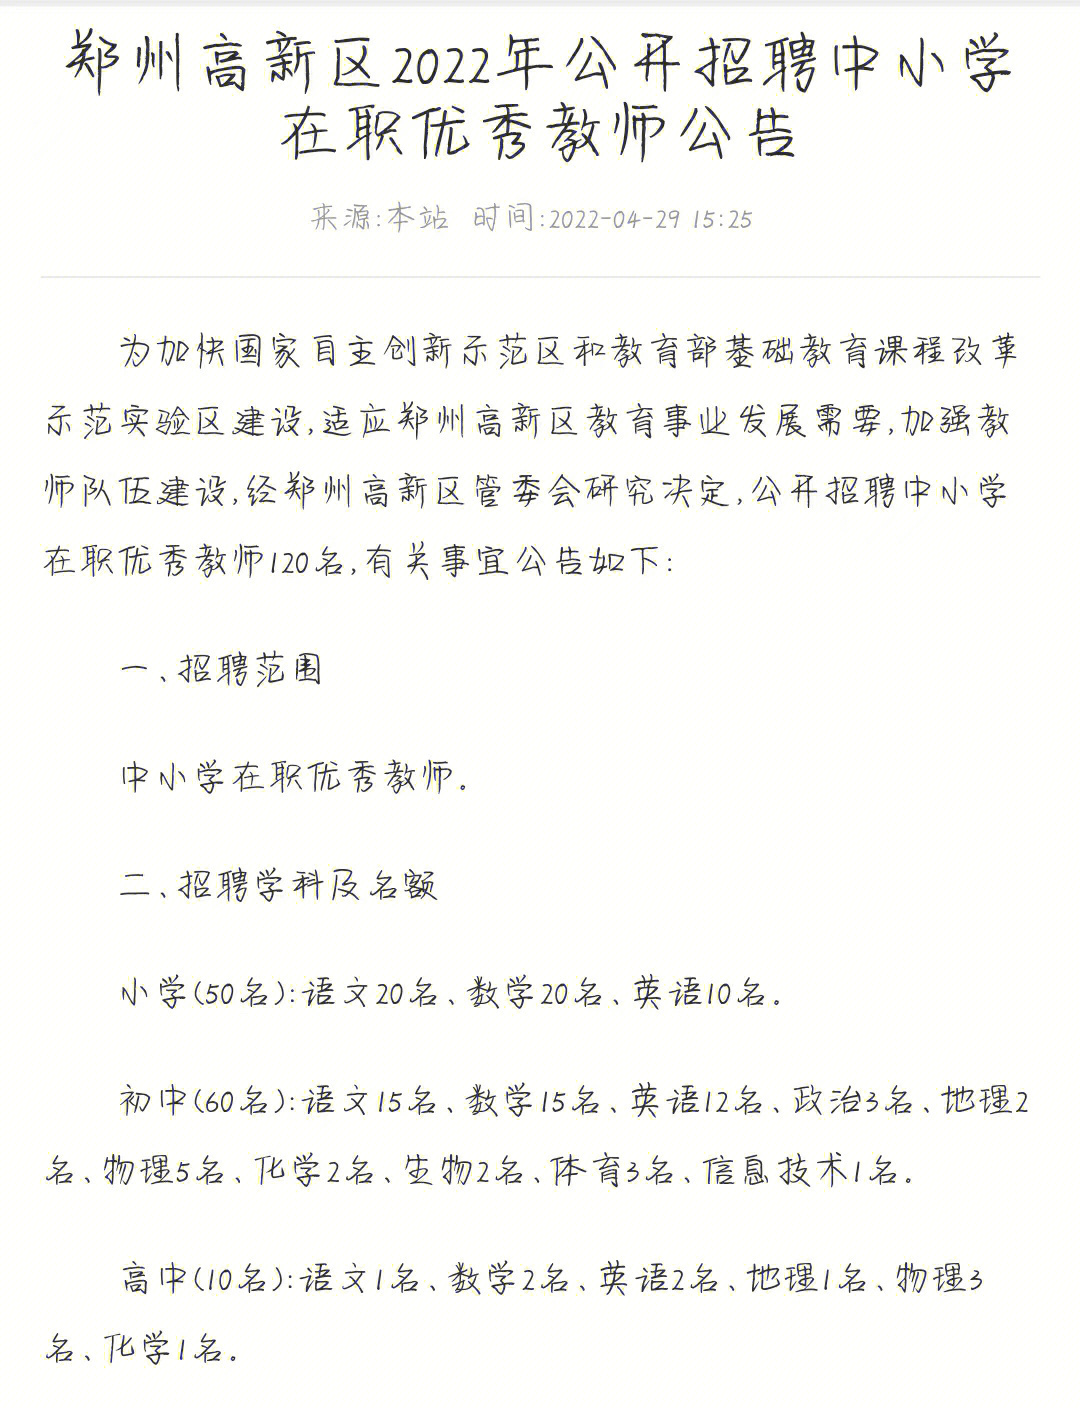 郑州高新区22年教师招聘公告